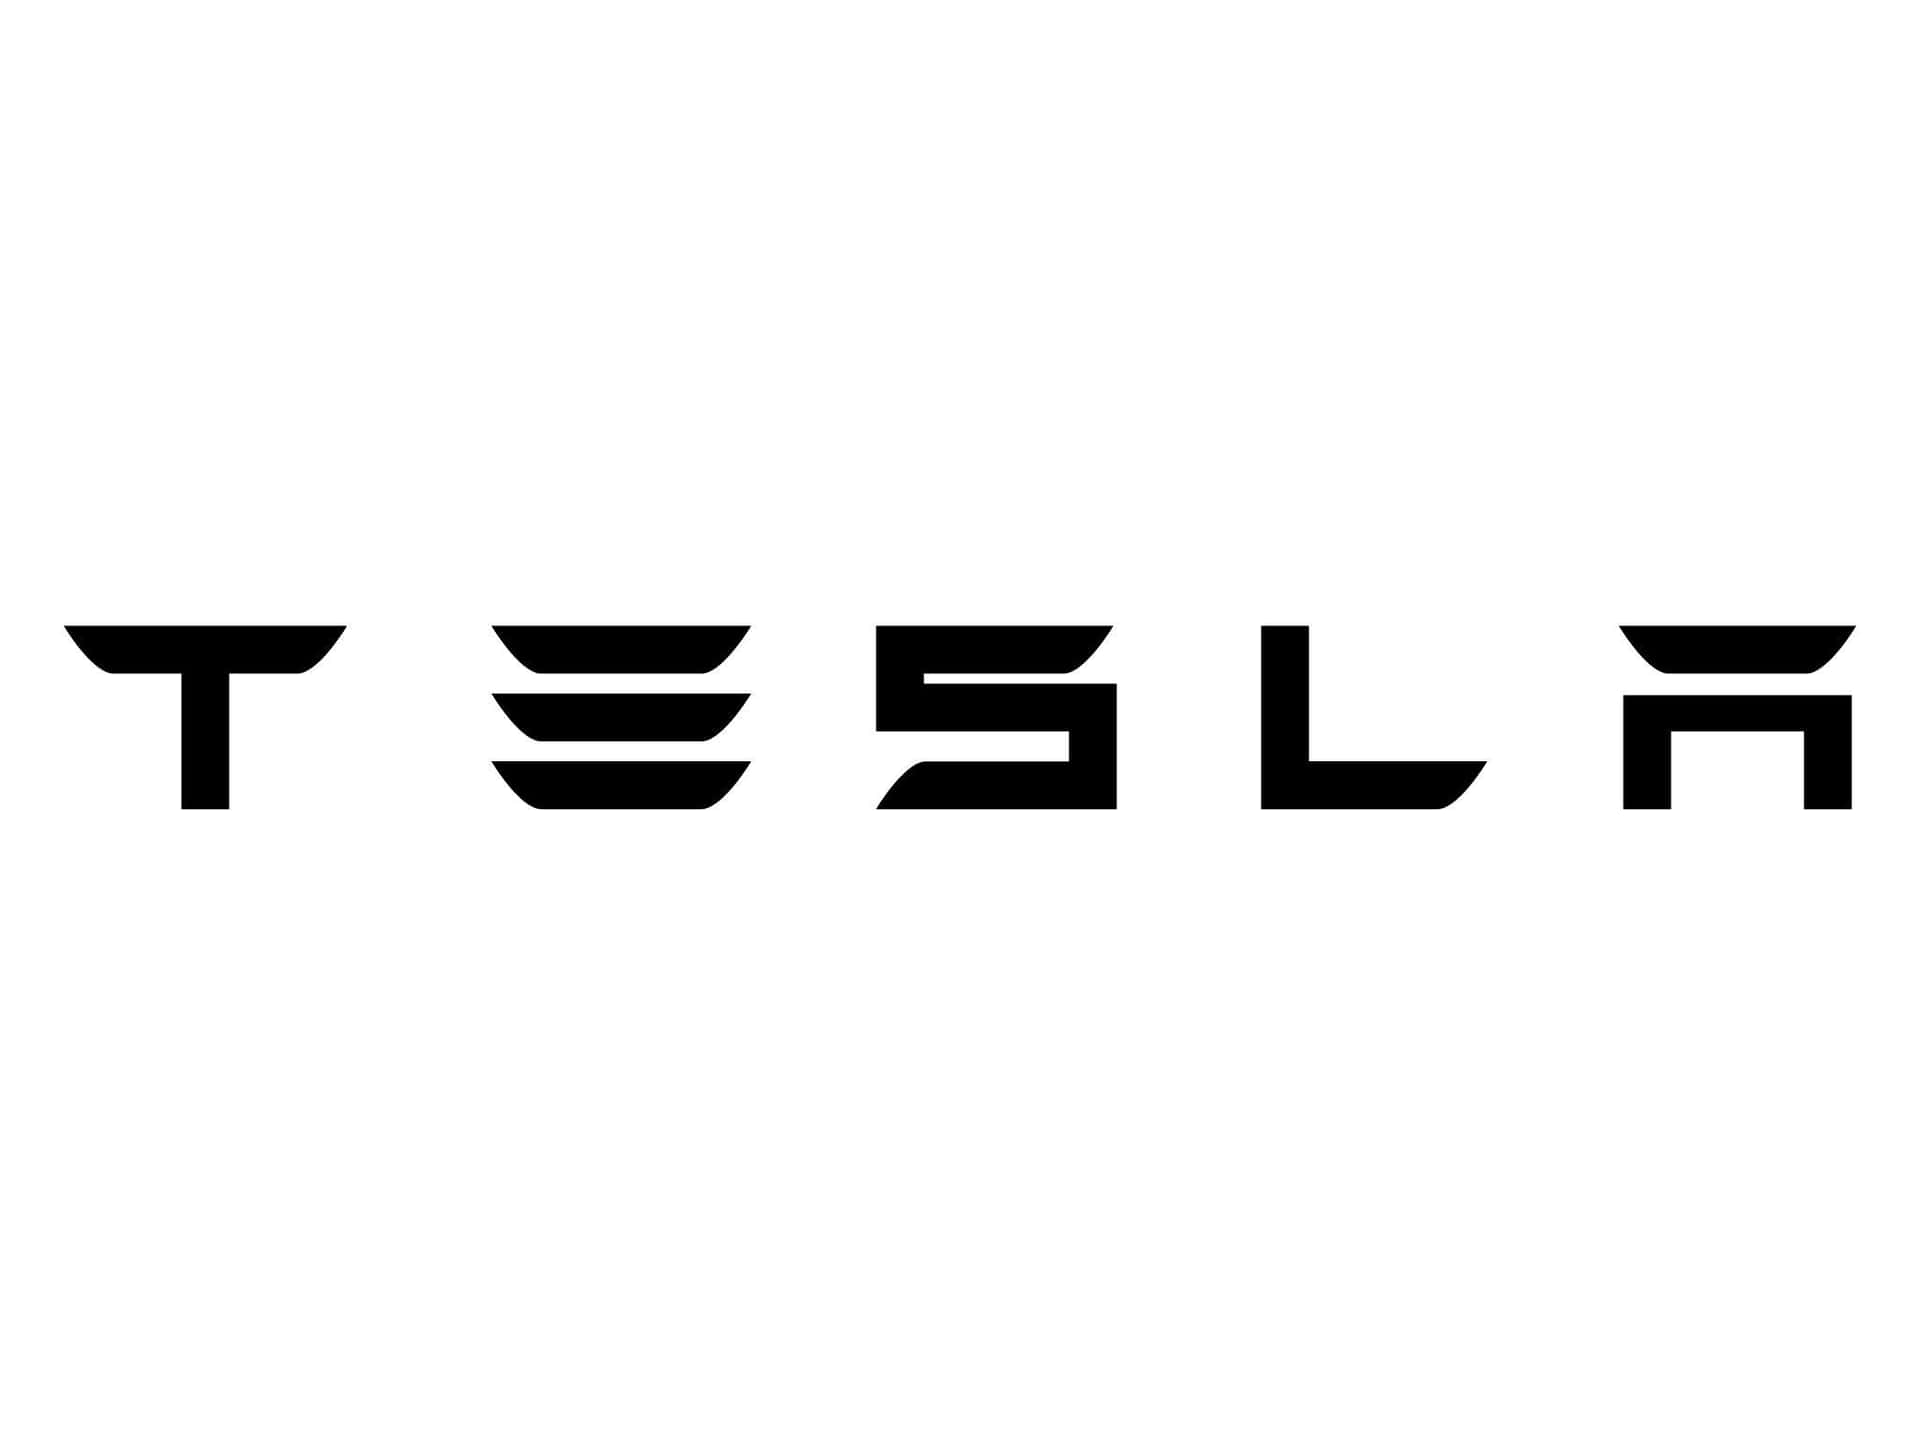 Logode Tesla En Resolución 4k. Fondo de pantalla